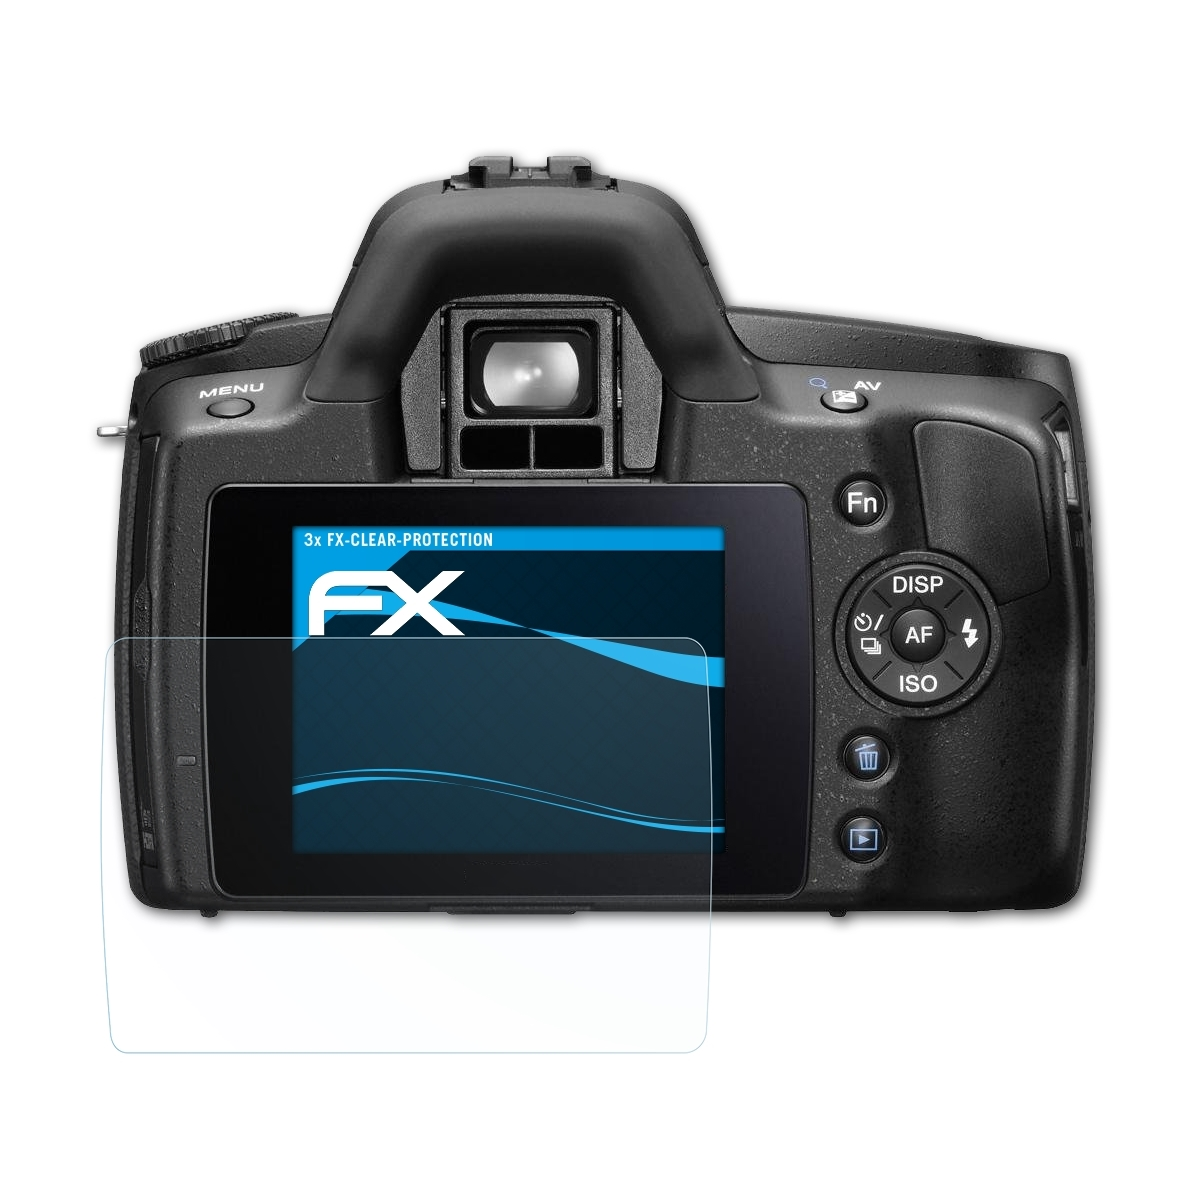 ATFOLIX 3x FX-Clear Displayschutz(für Sony a290 Alpha (DSLR-A290))